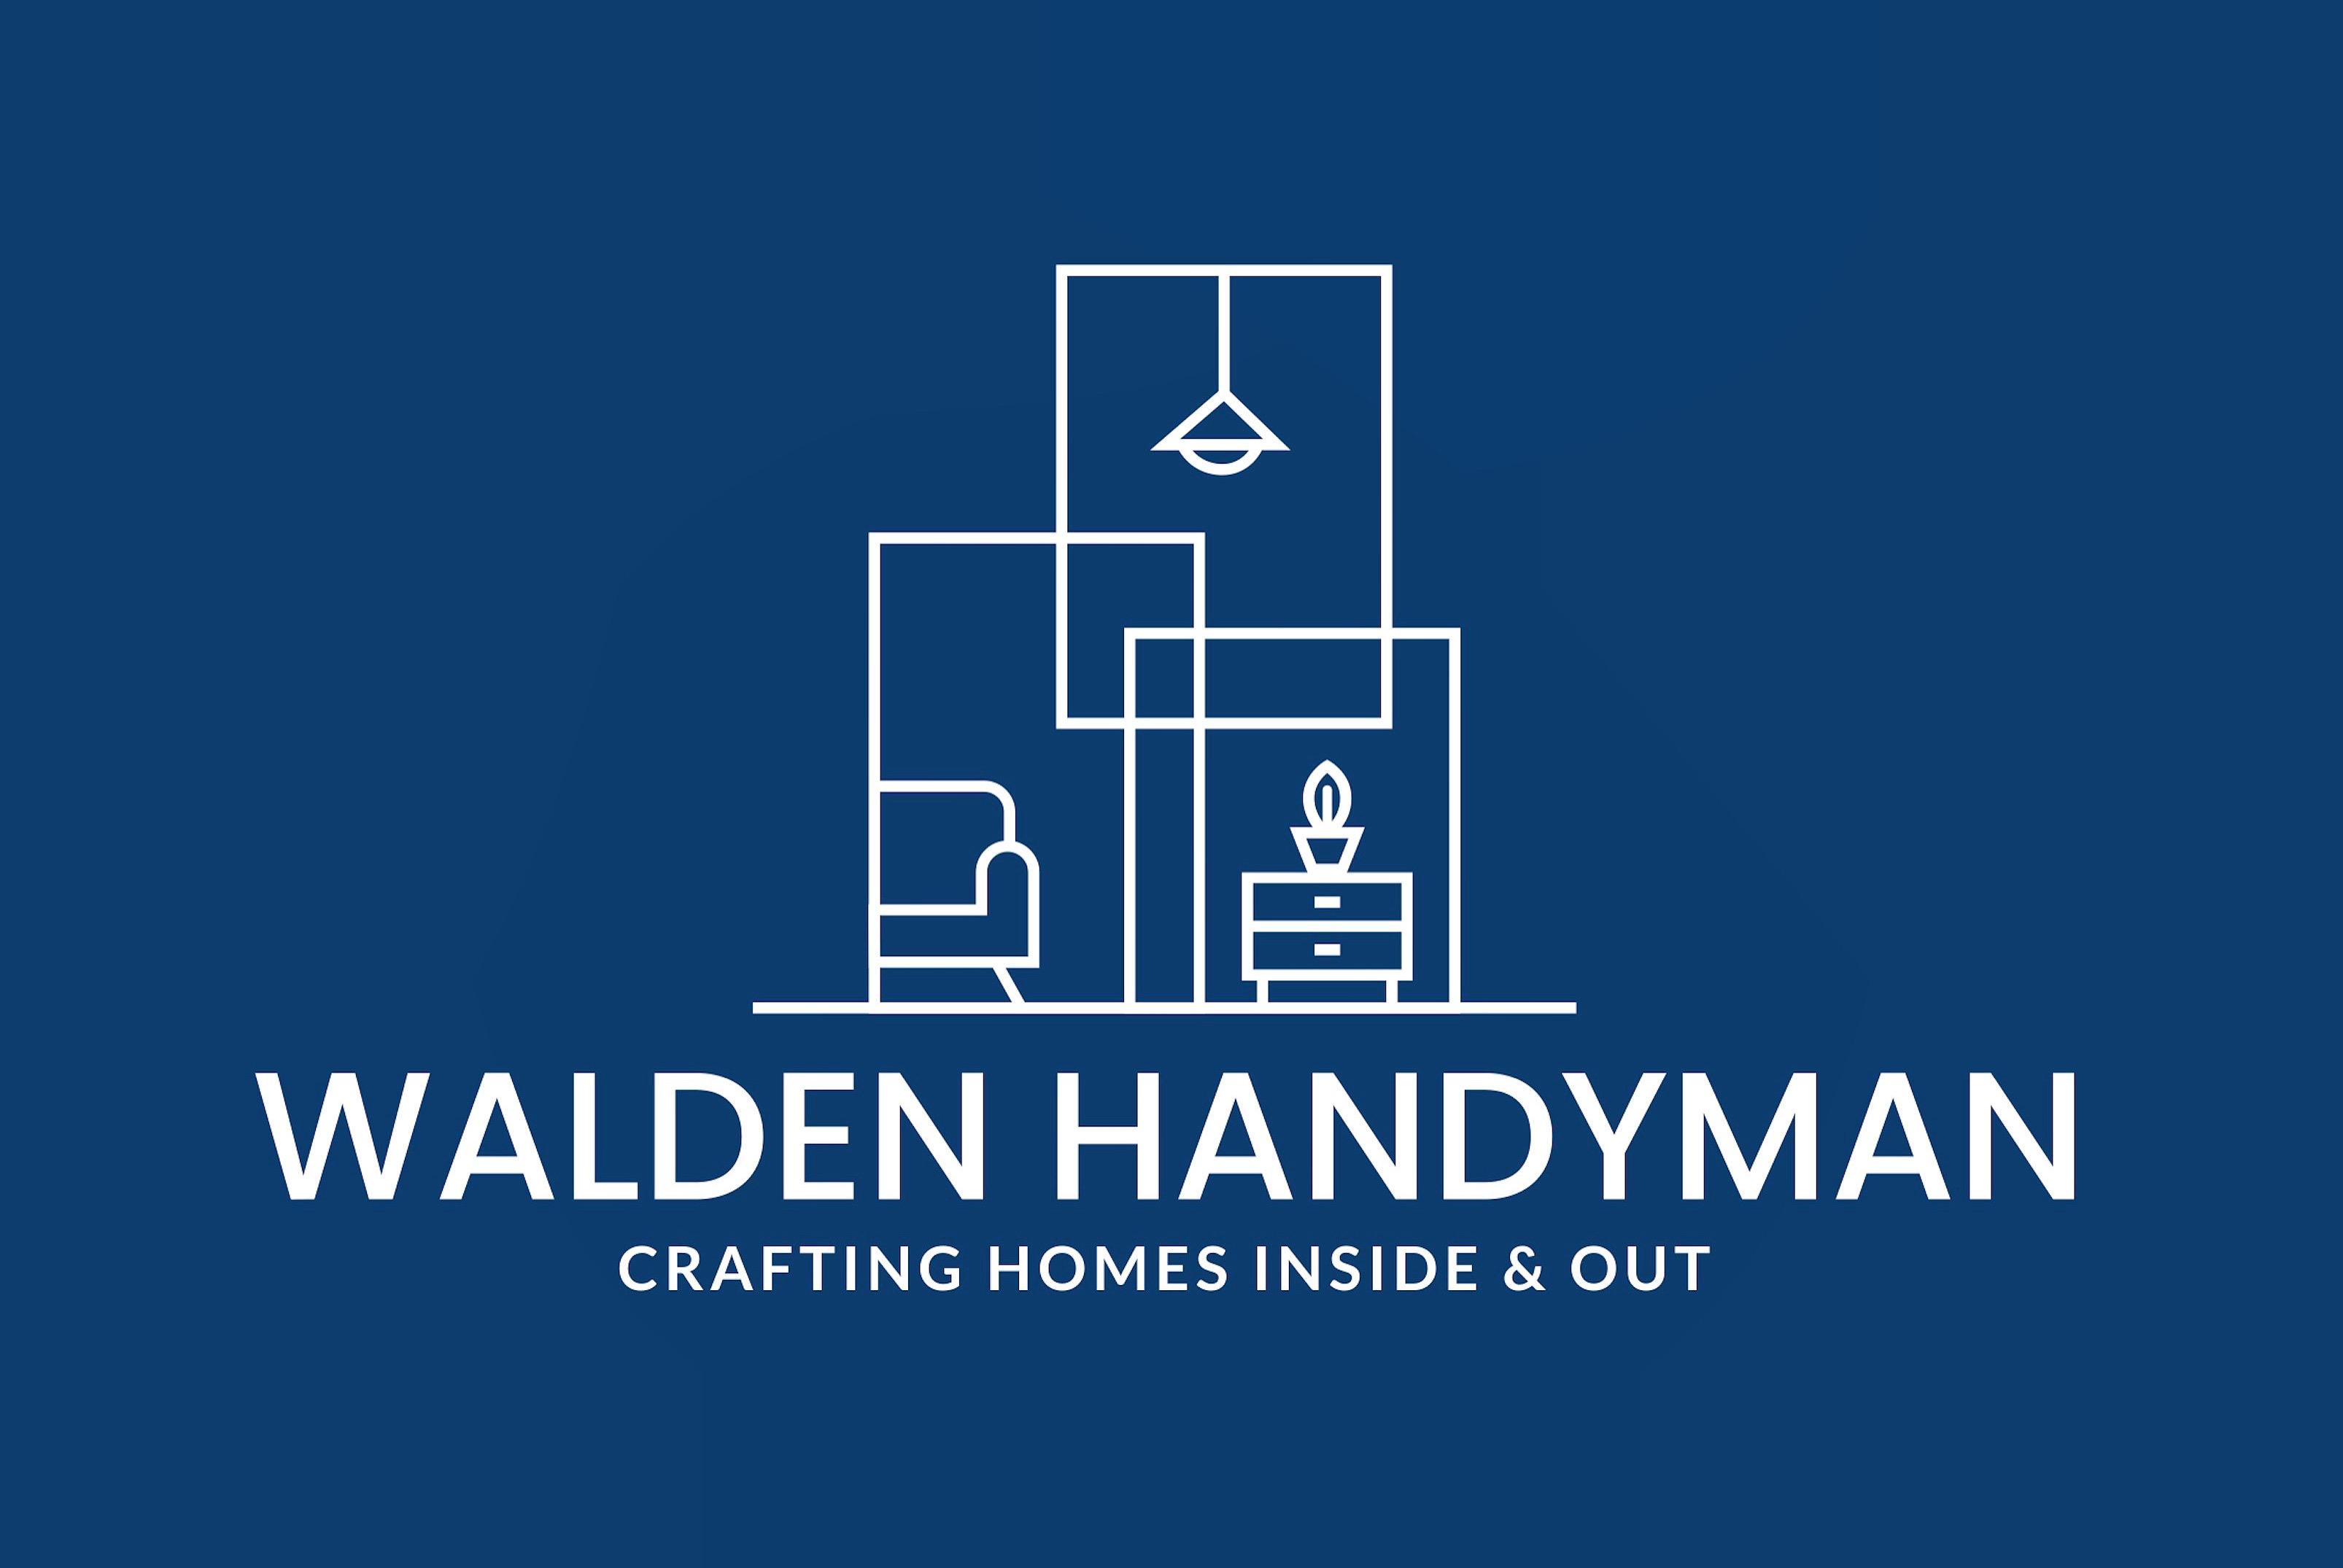 Walden Handyman - Handyman Service in Essex